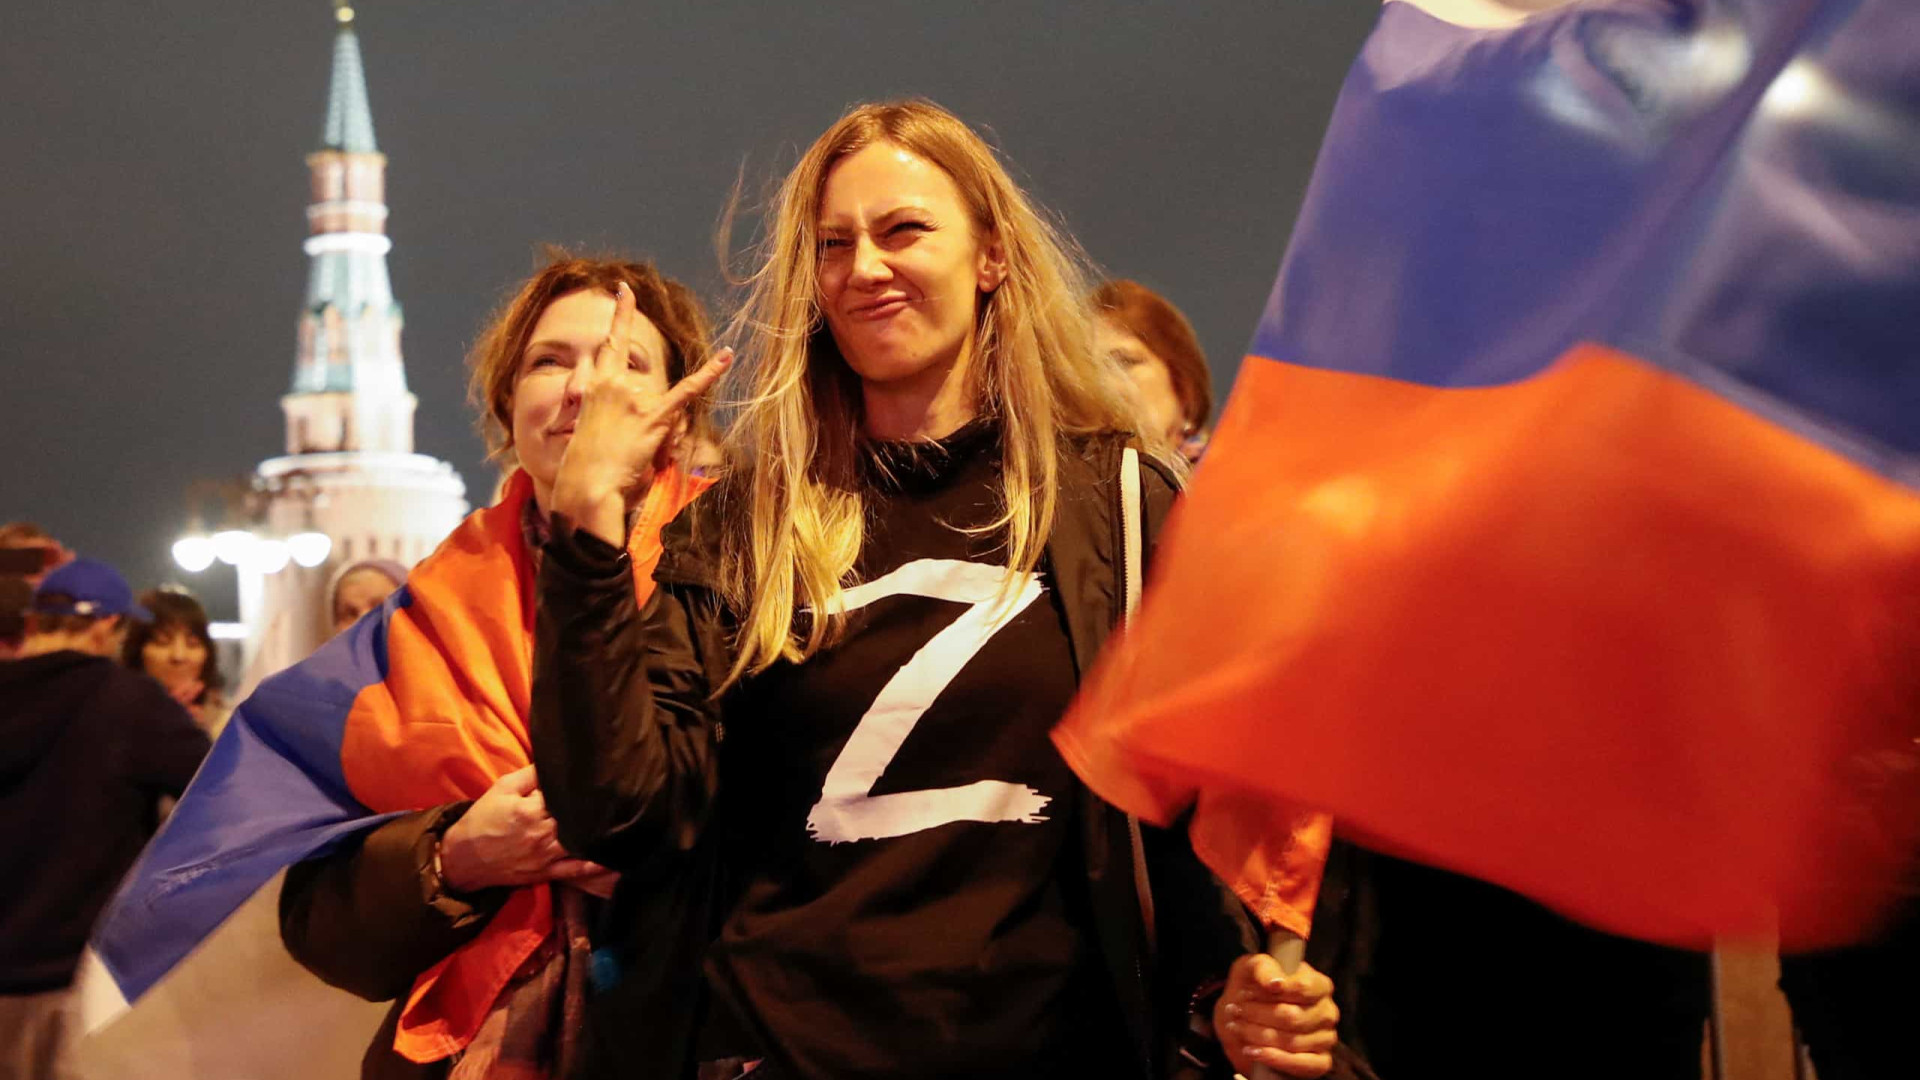 Russos celebram anexação. Na Praça Vermelha fala-se numa "Ucrânia russa"